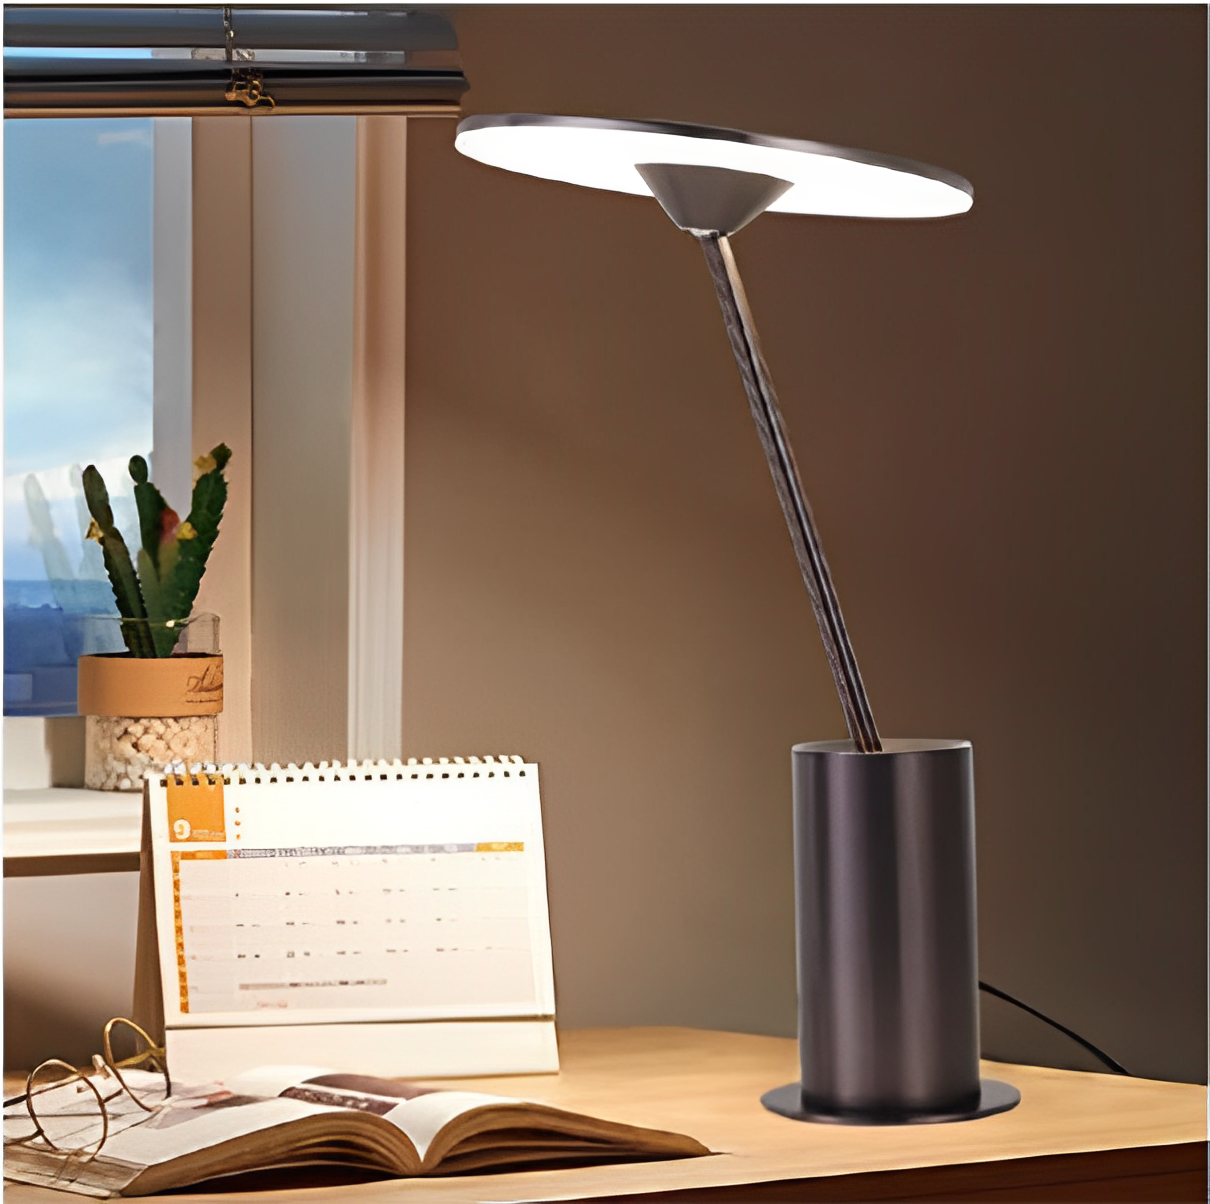 مصباح طاولة LED داخلي مزخرف بقاعدة معدنية لتزيين المنزل والفنادق الفاخرة الحديثة والإبداعية